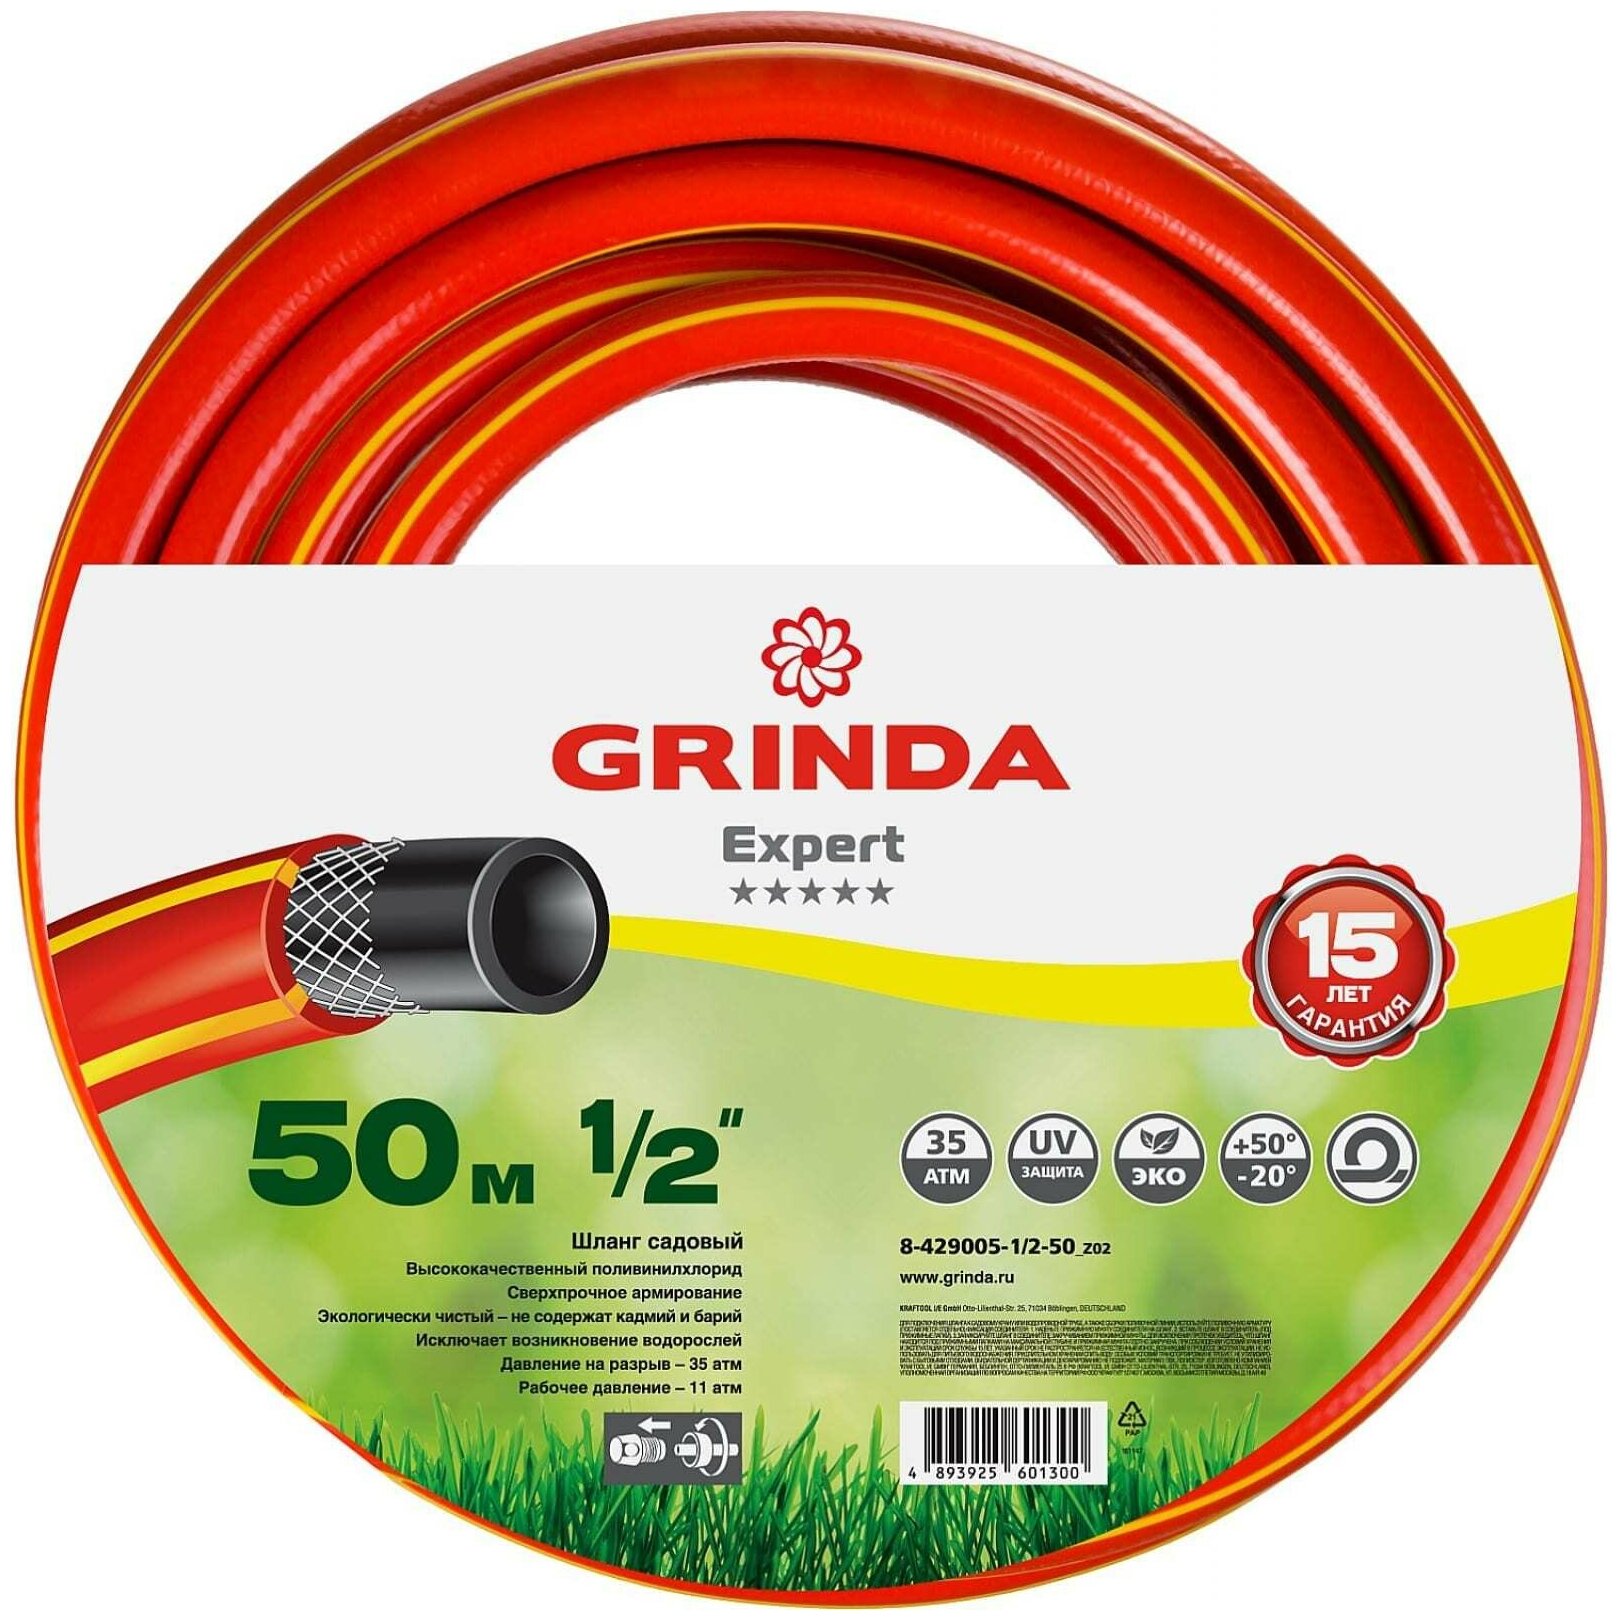 GRINDA PROLine EXPERT 3 1/2", 50 м, 35 атм трёхслойный поливочный шланг, армированный